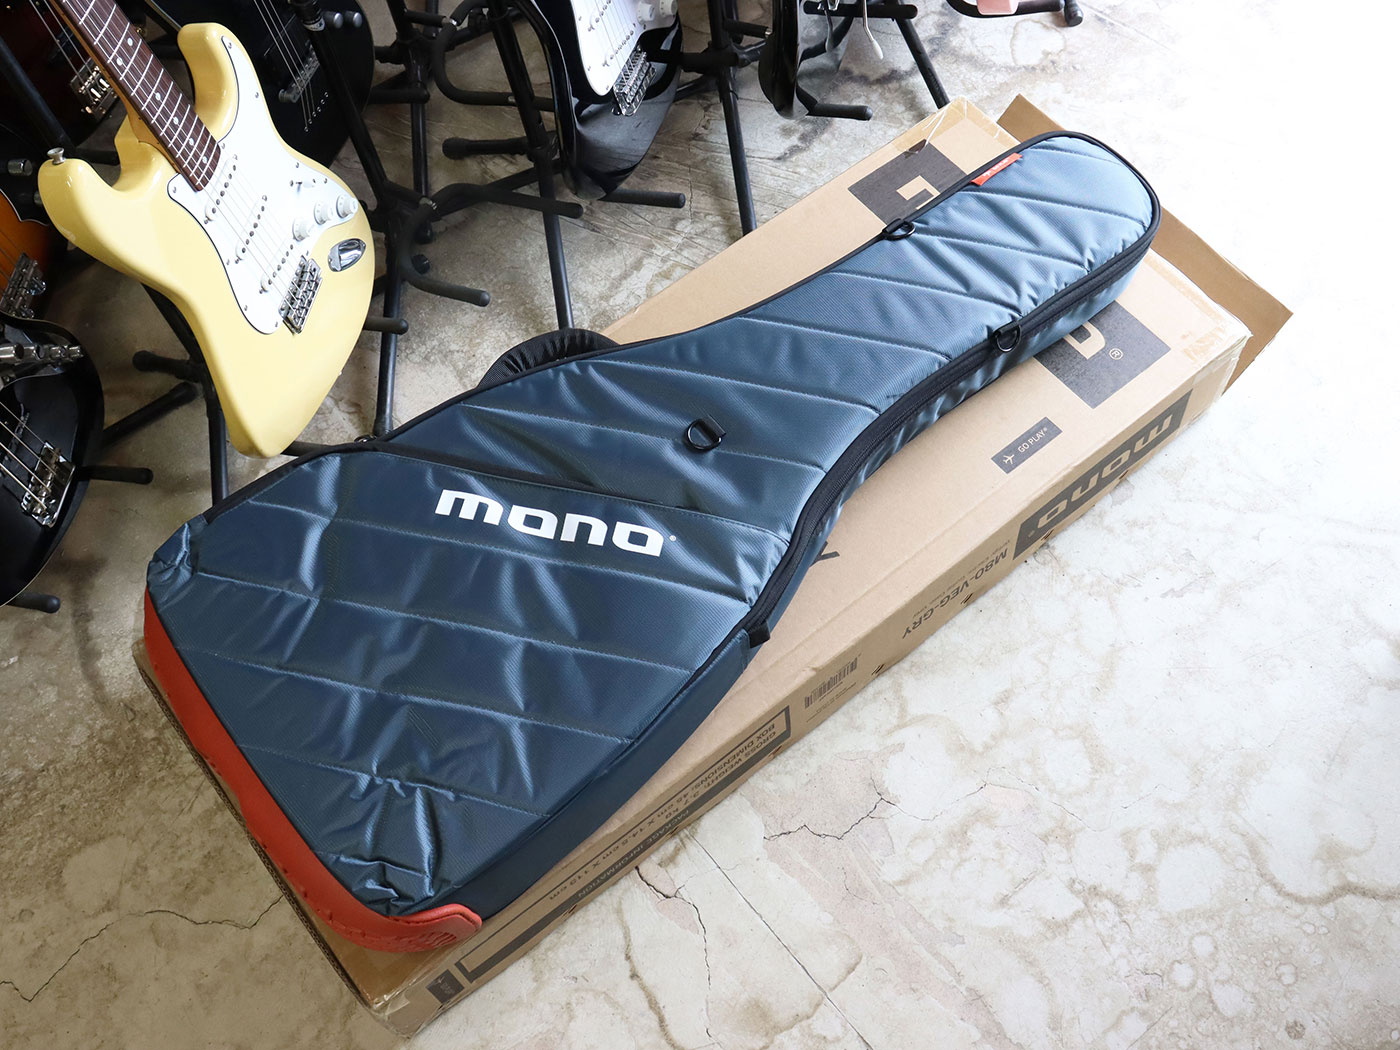 【美品】MONO CASE M80 アコースティックギター用ギグバッグ